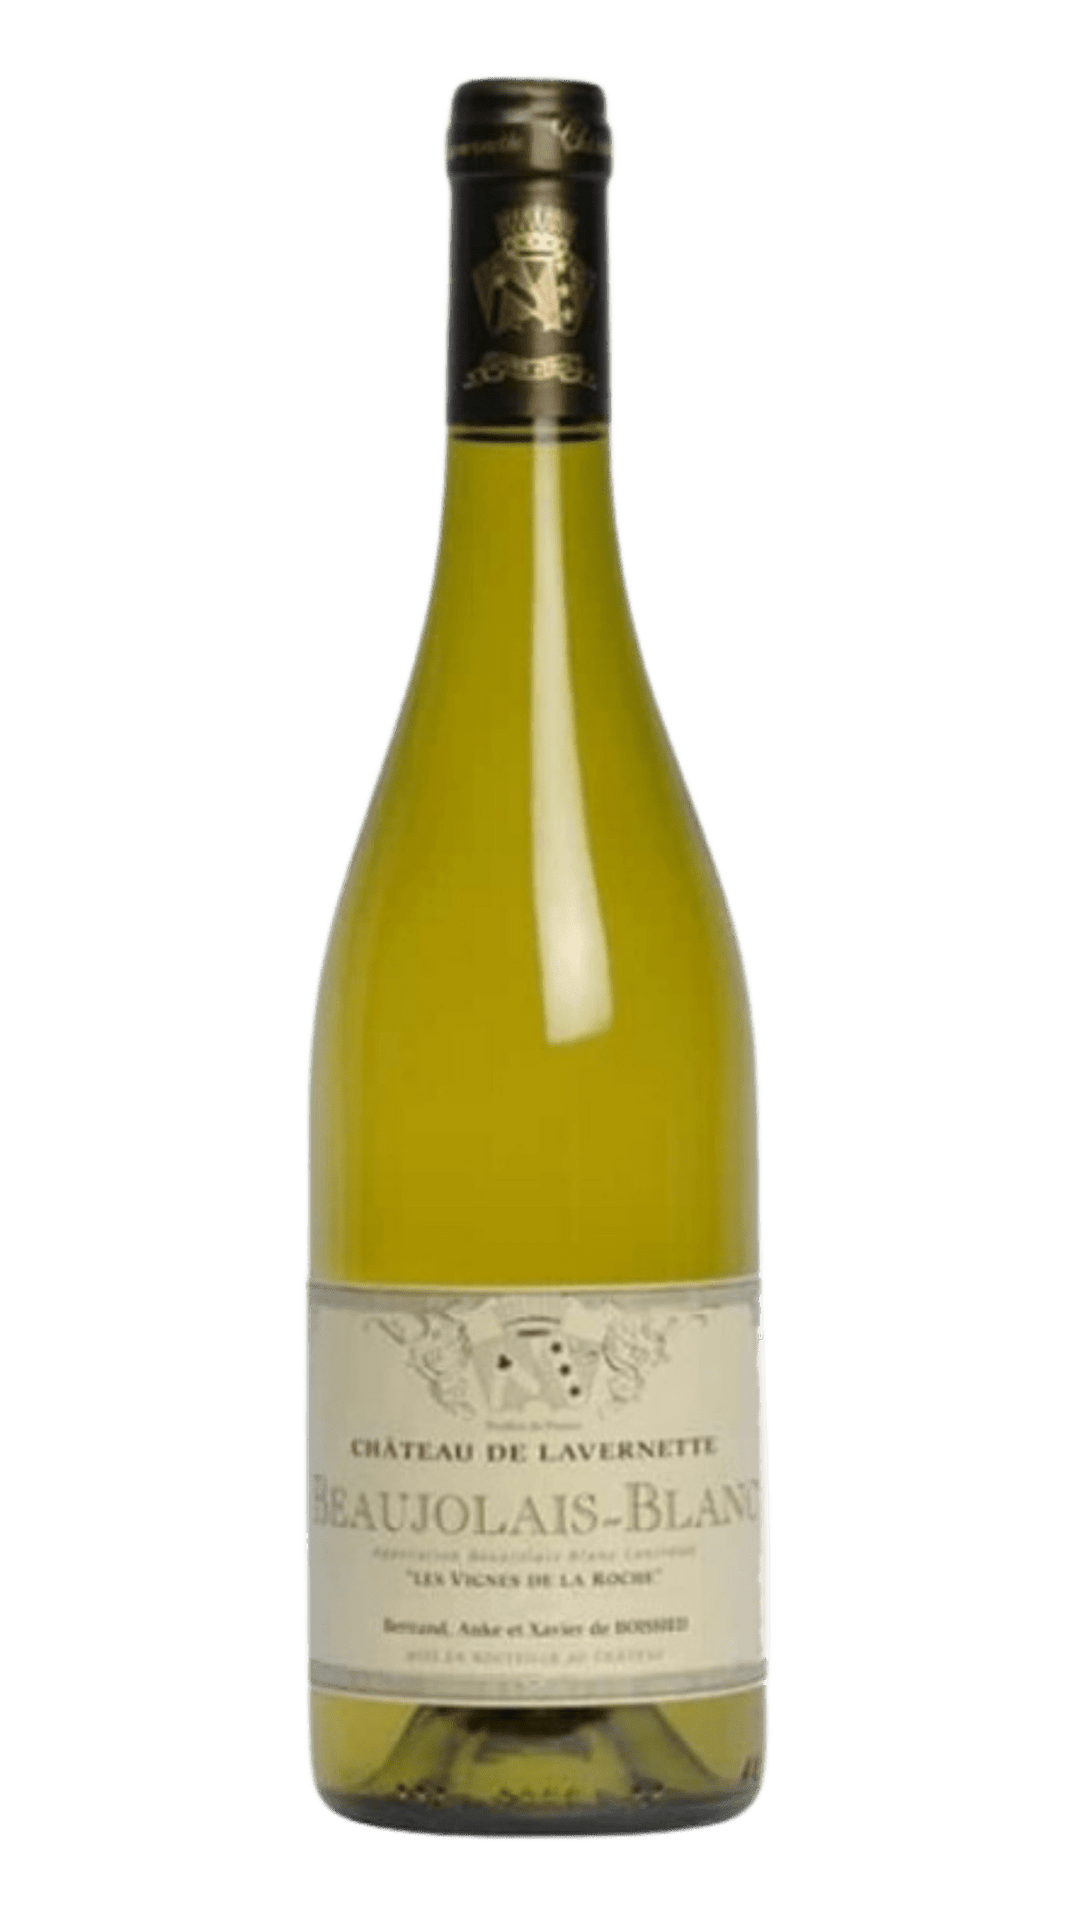 2020 Chateau de Lavernette Beaujolais Blanc "Les Vignes de la Roche" - Harvest Wine Shop